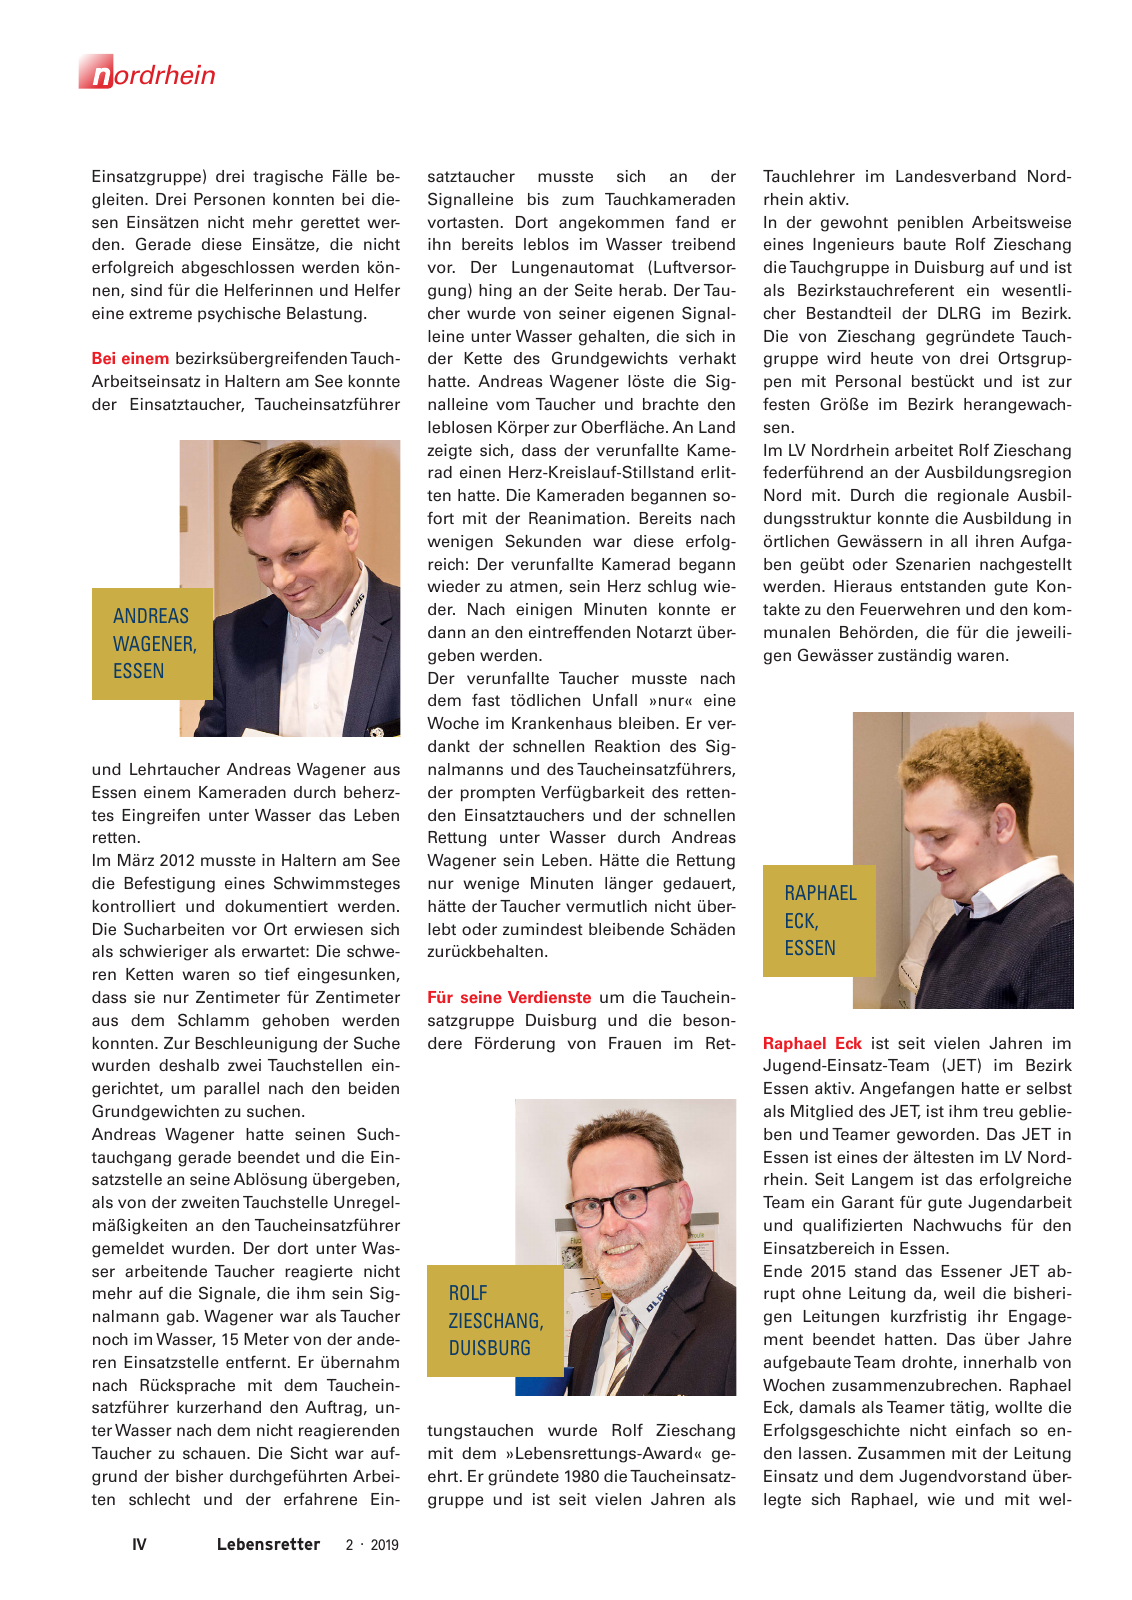 Vorschau Lebensretter 2/2019 - Nordrhein Regionalausgabe Seite 6